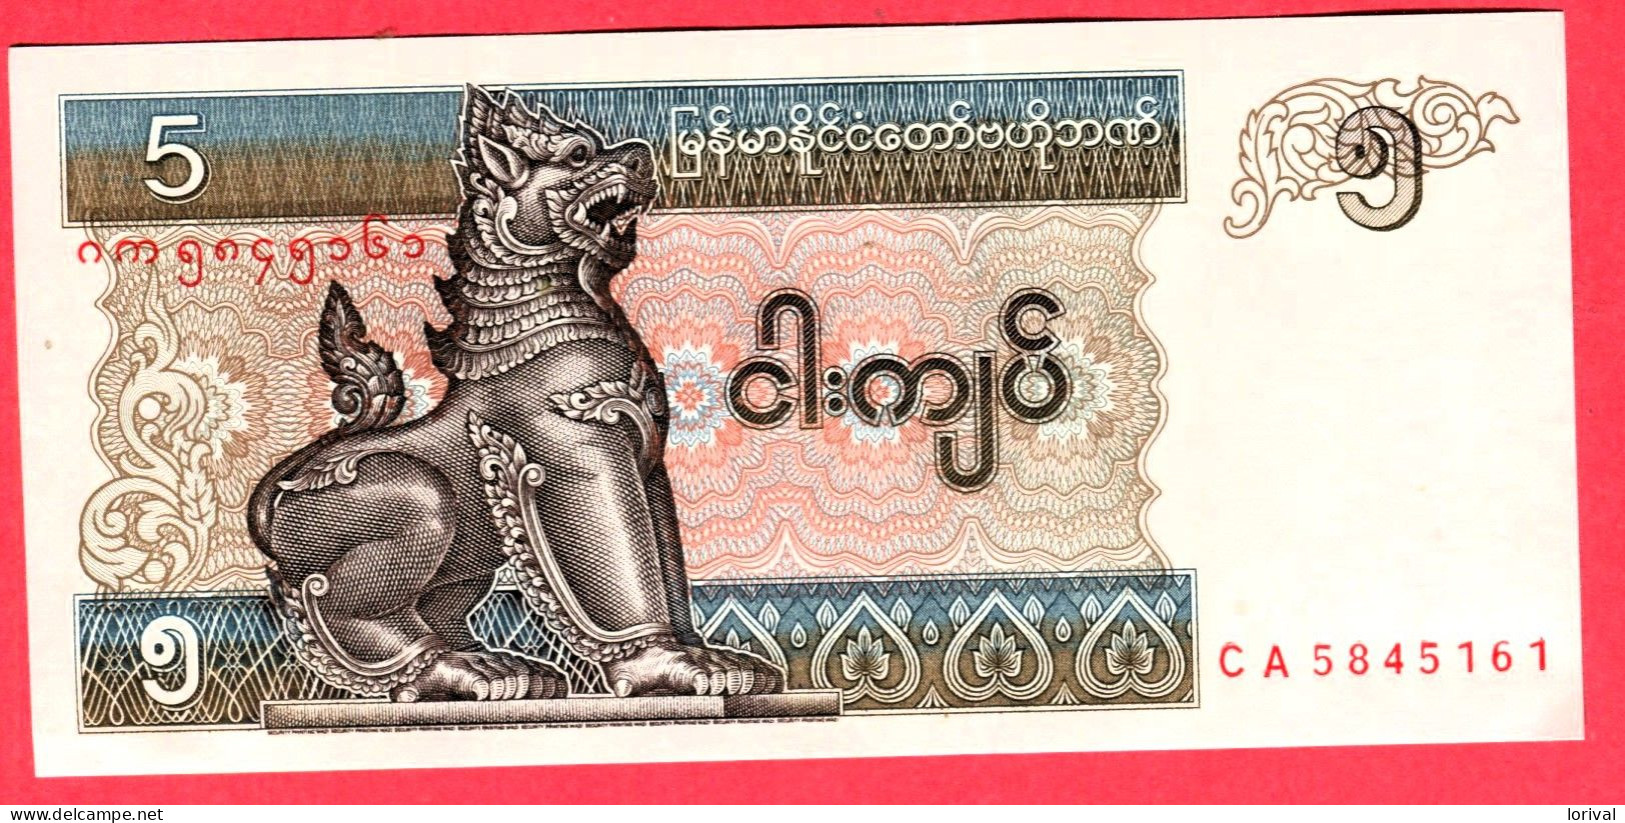 5 Kyats Neuf 3 Euros - Myanmar